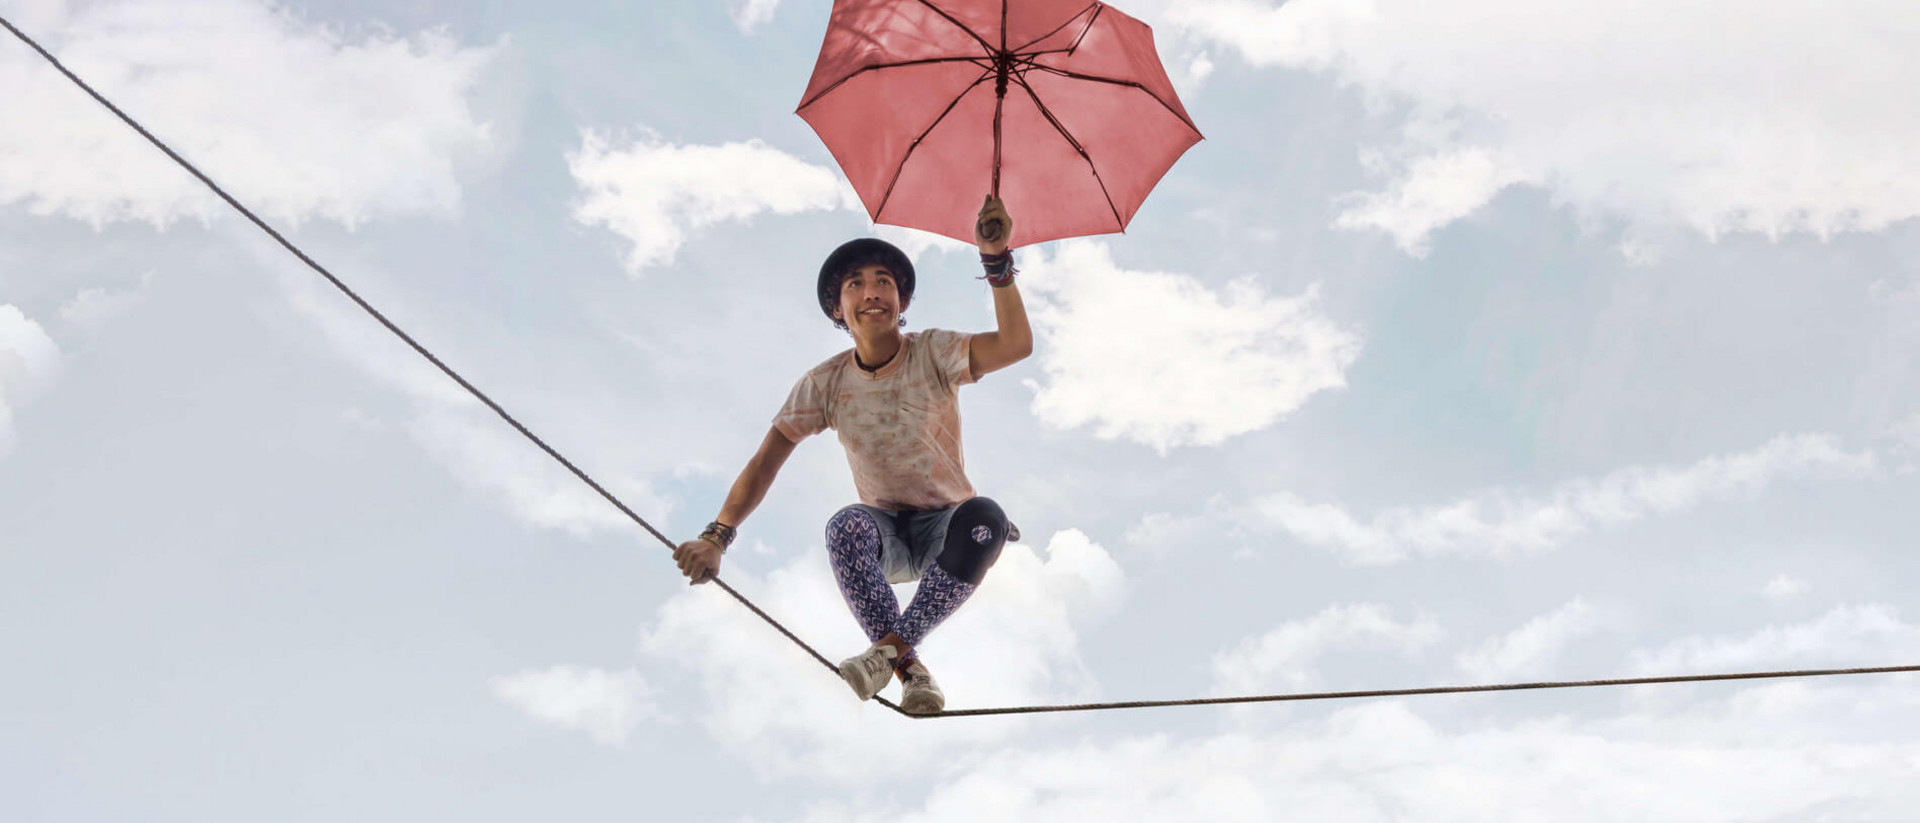 Ein junger Mann balanciert fröhlich auf einem Seil. In der Hand hält er einen geöffneten Regenschirm.